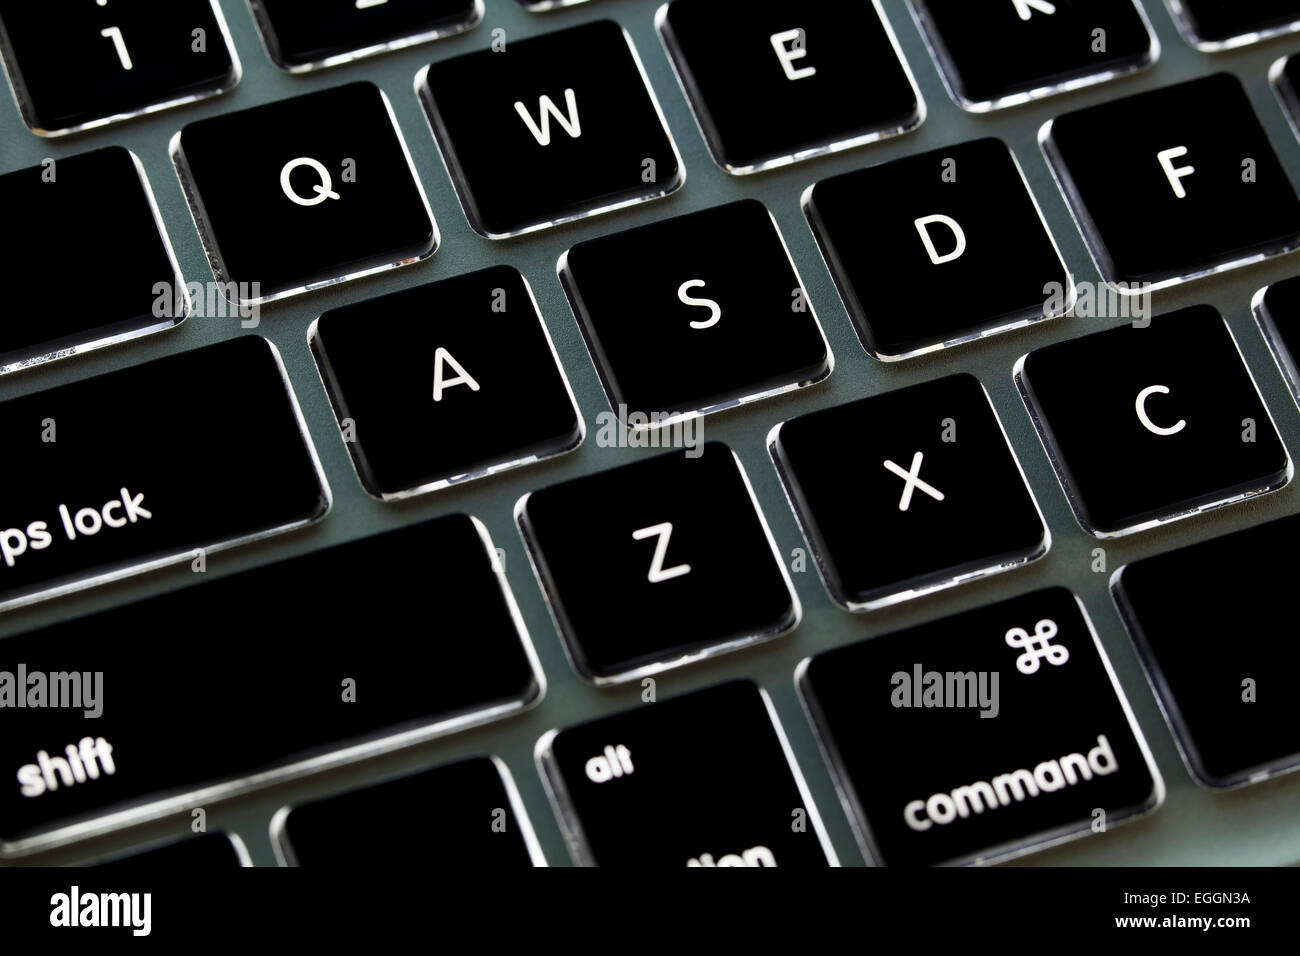 Apple Macbook Pro teclado iluminado - EE.UU Fotografía de stock - Alamy